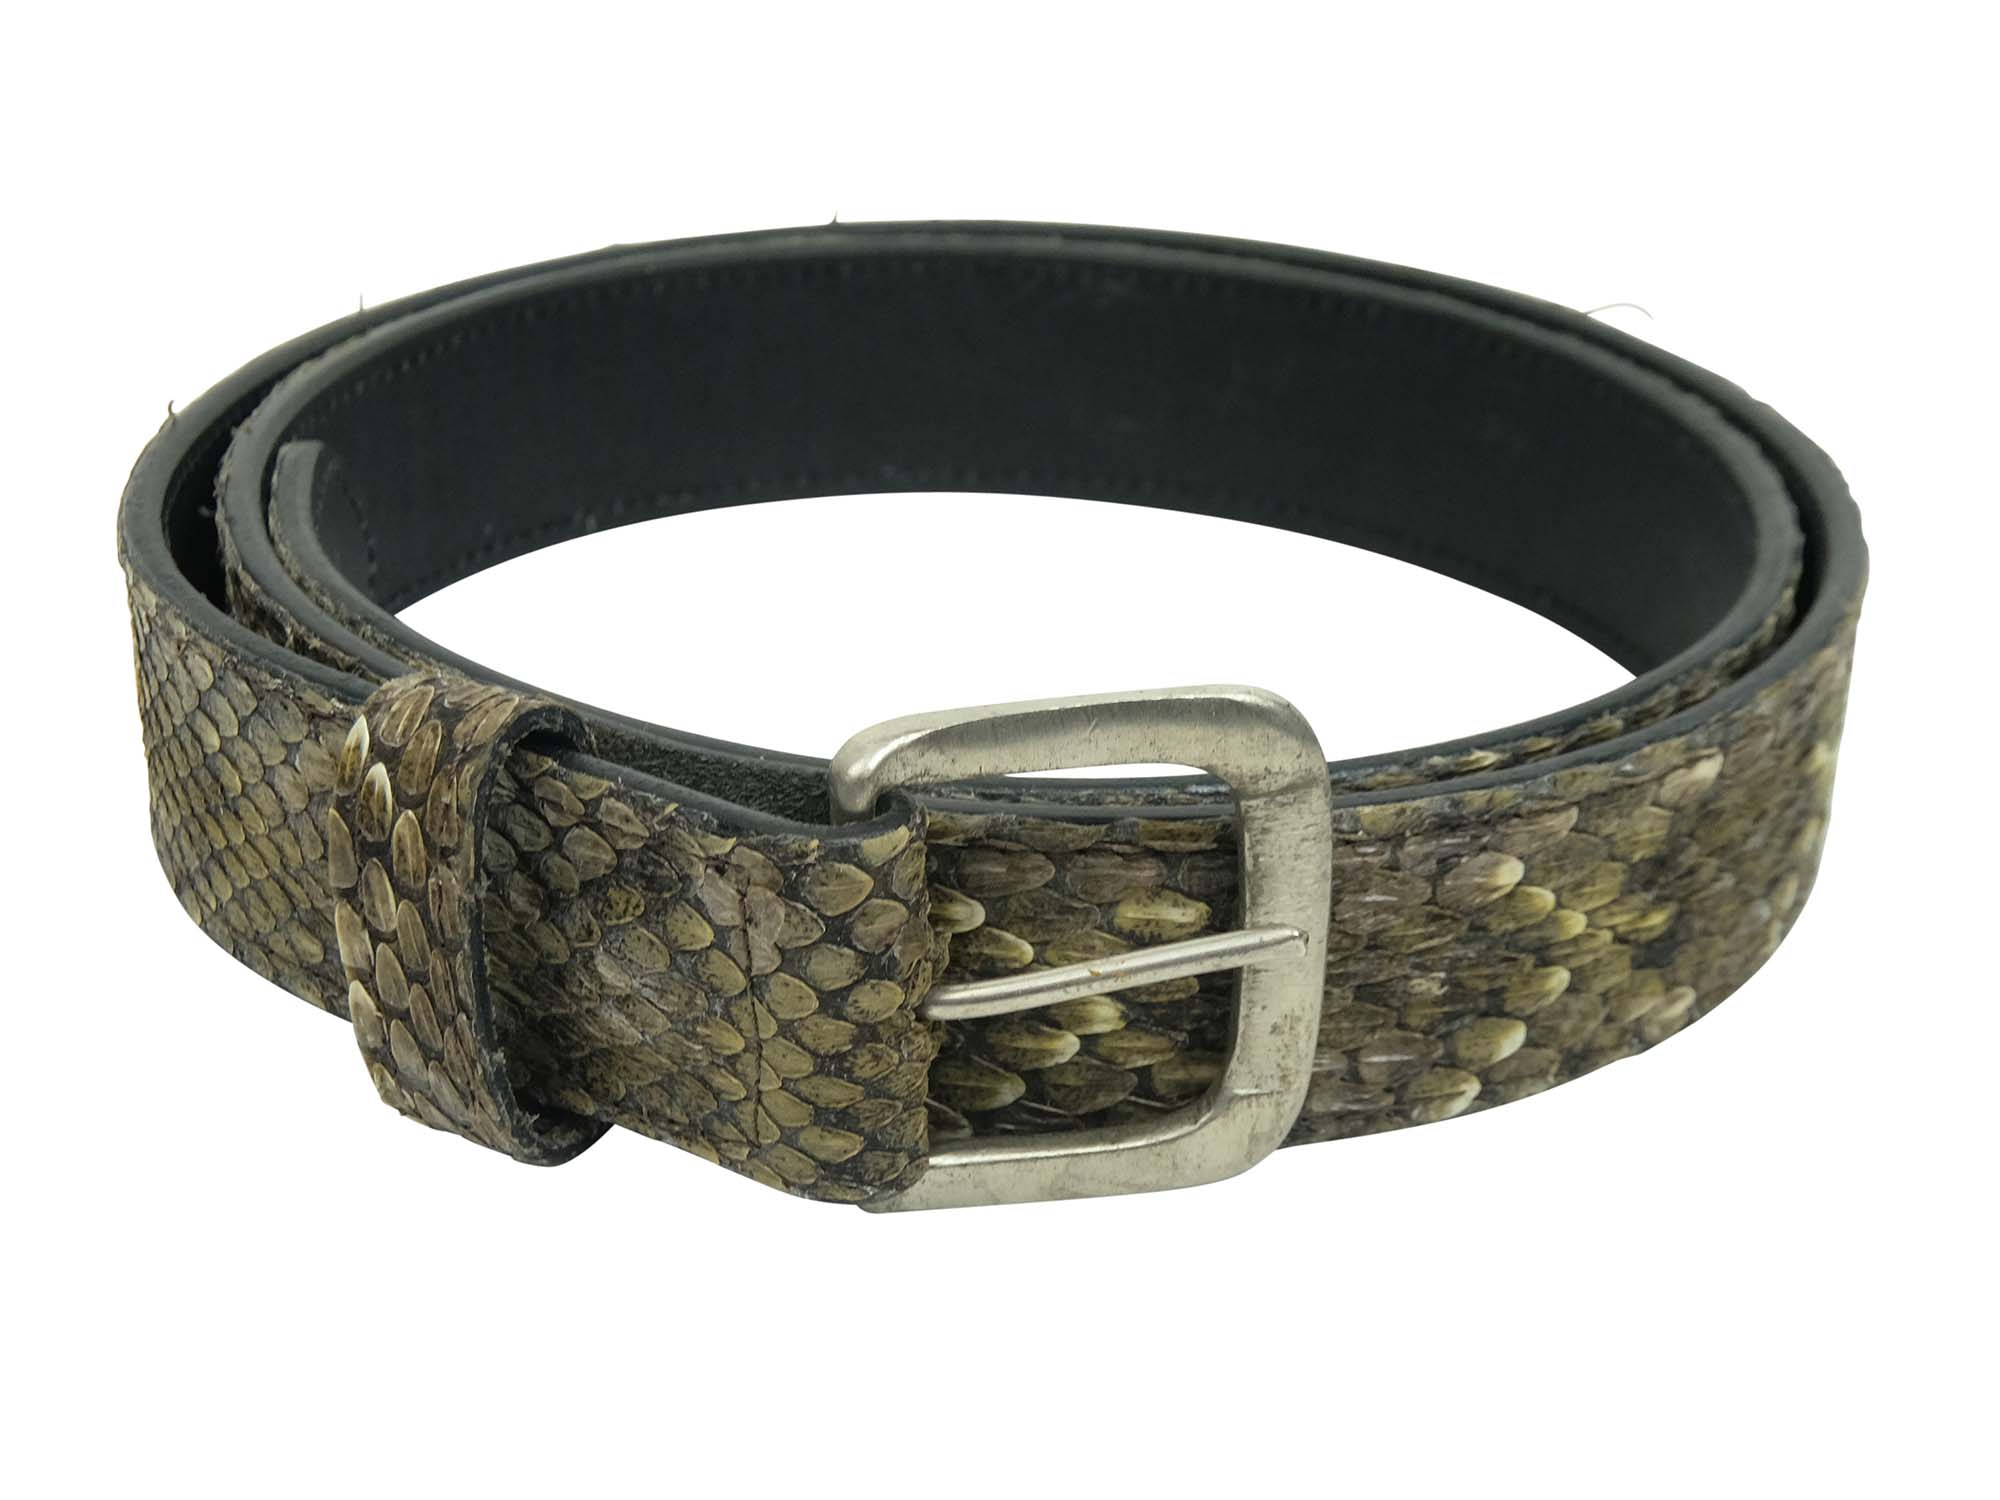 rattlesnake belt buckle